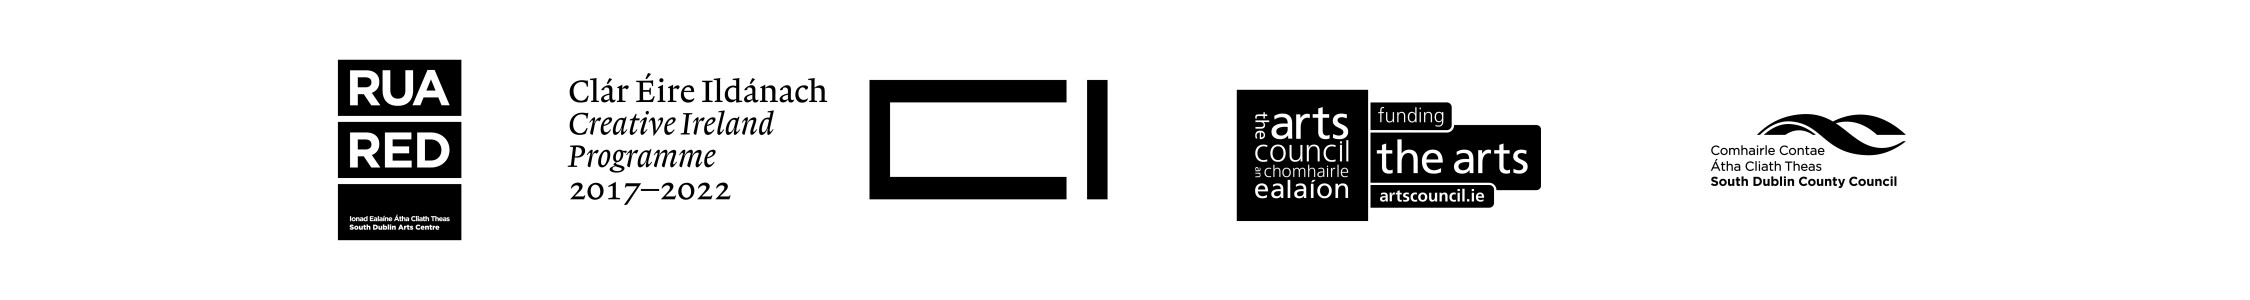 Logo for Rua Red, Creative Ireland, The Arts Council of Ireland, South Dublin Arts Council